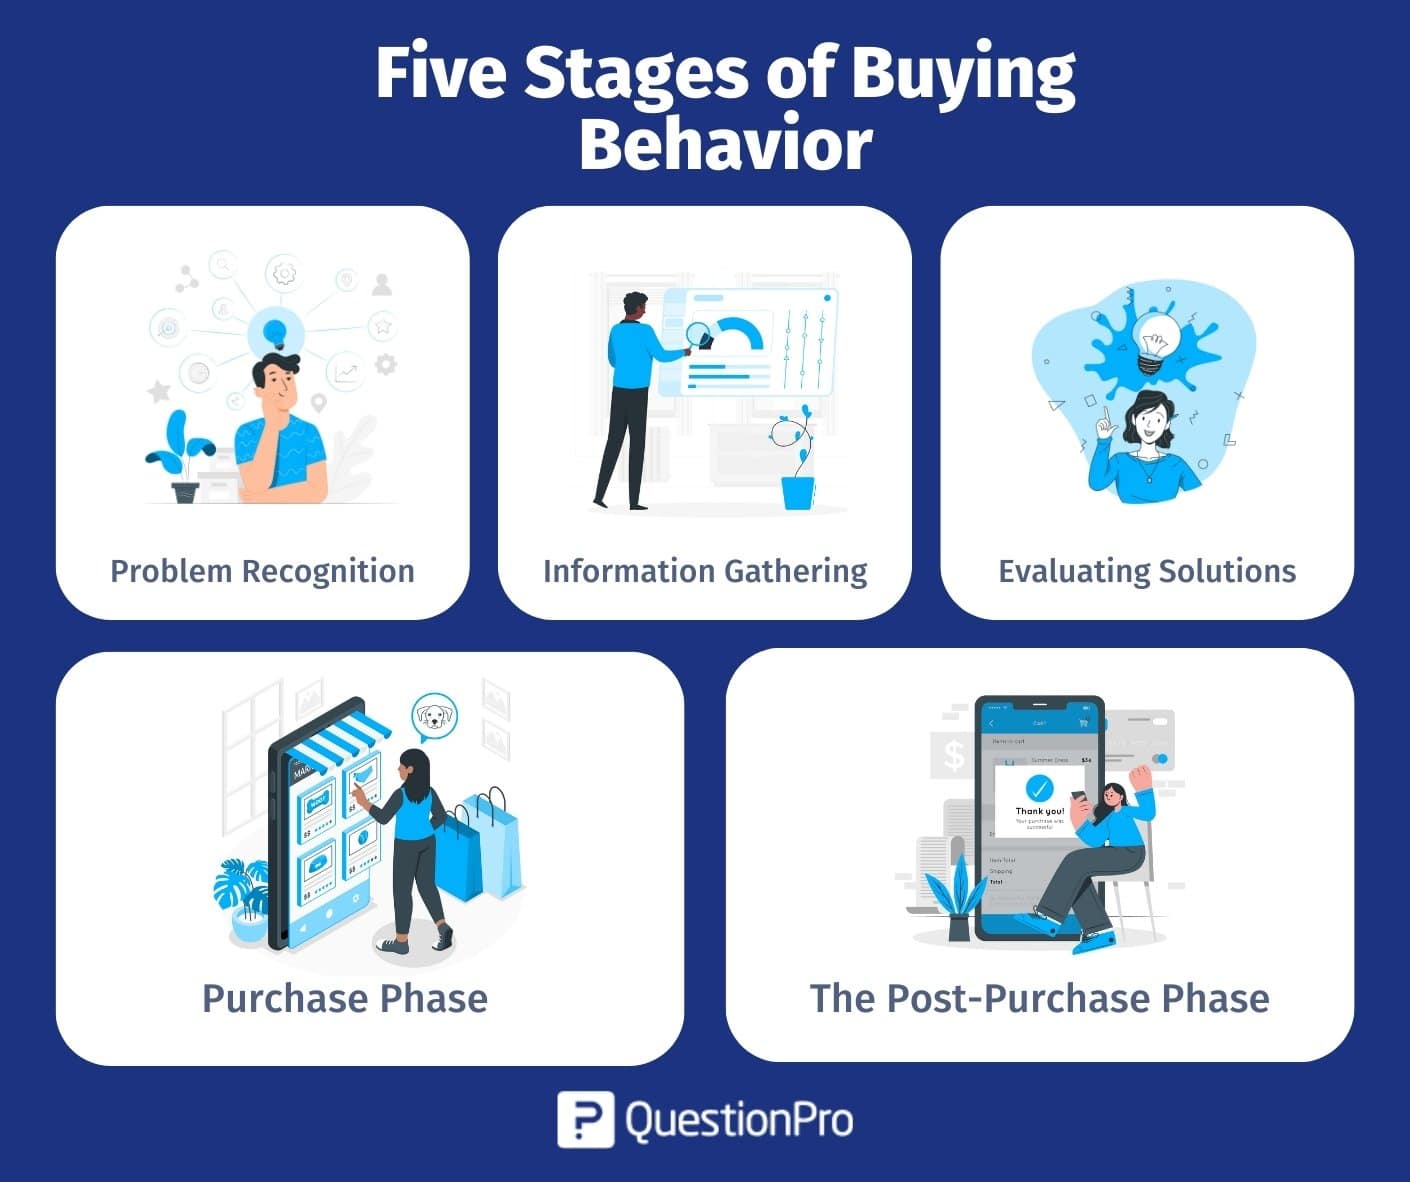 Les cinq étapes du comportement d'achat.jpg